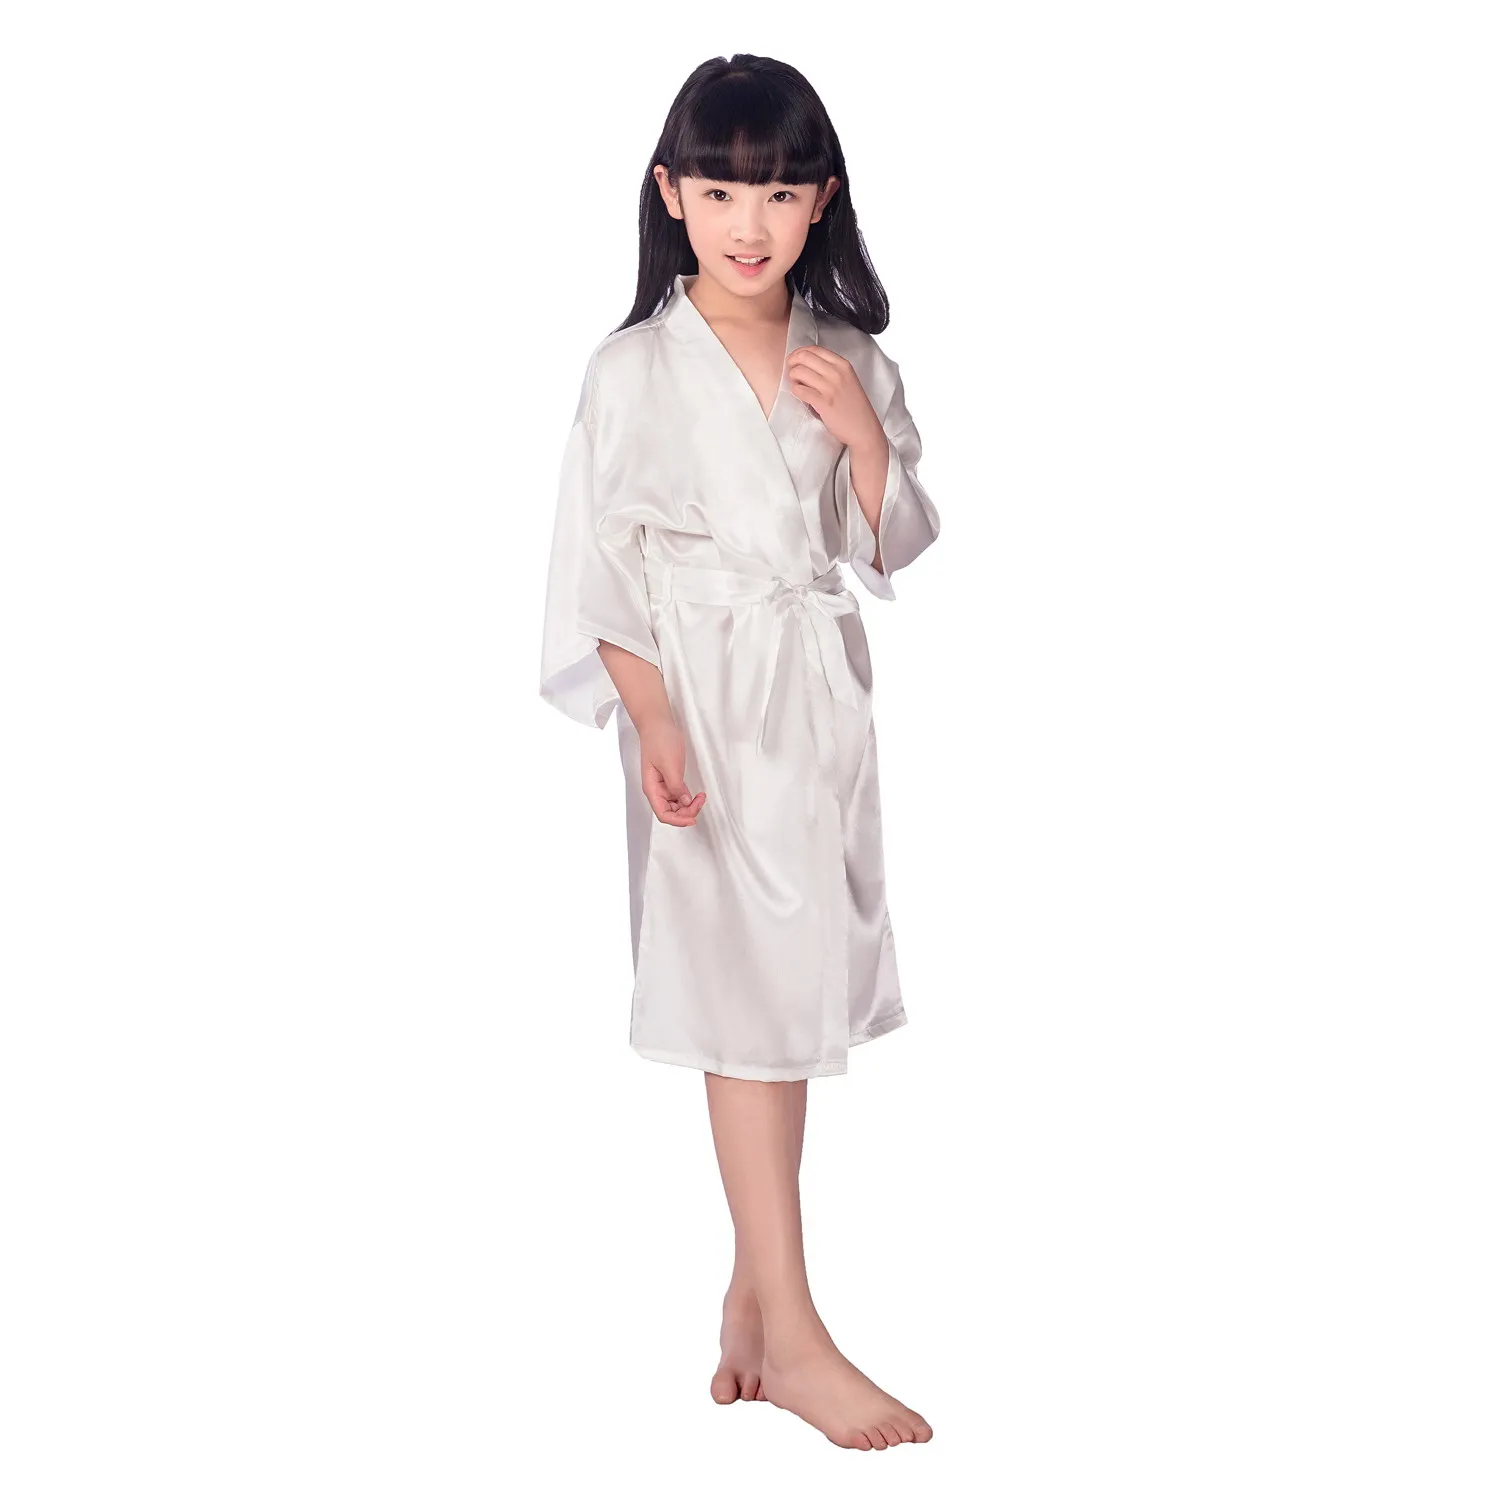 2017 verão meninas sólidas rayon seda robe sleepwear lingerie pijamas pijamas cetim quimono vestido pjs roupão de banho feminino vestido / lote # 4027